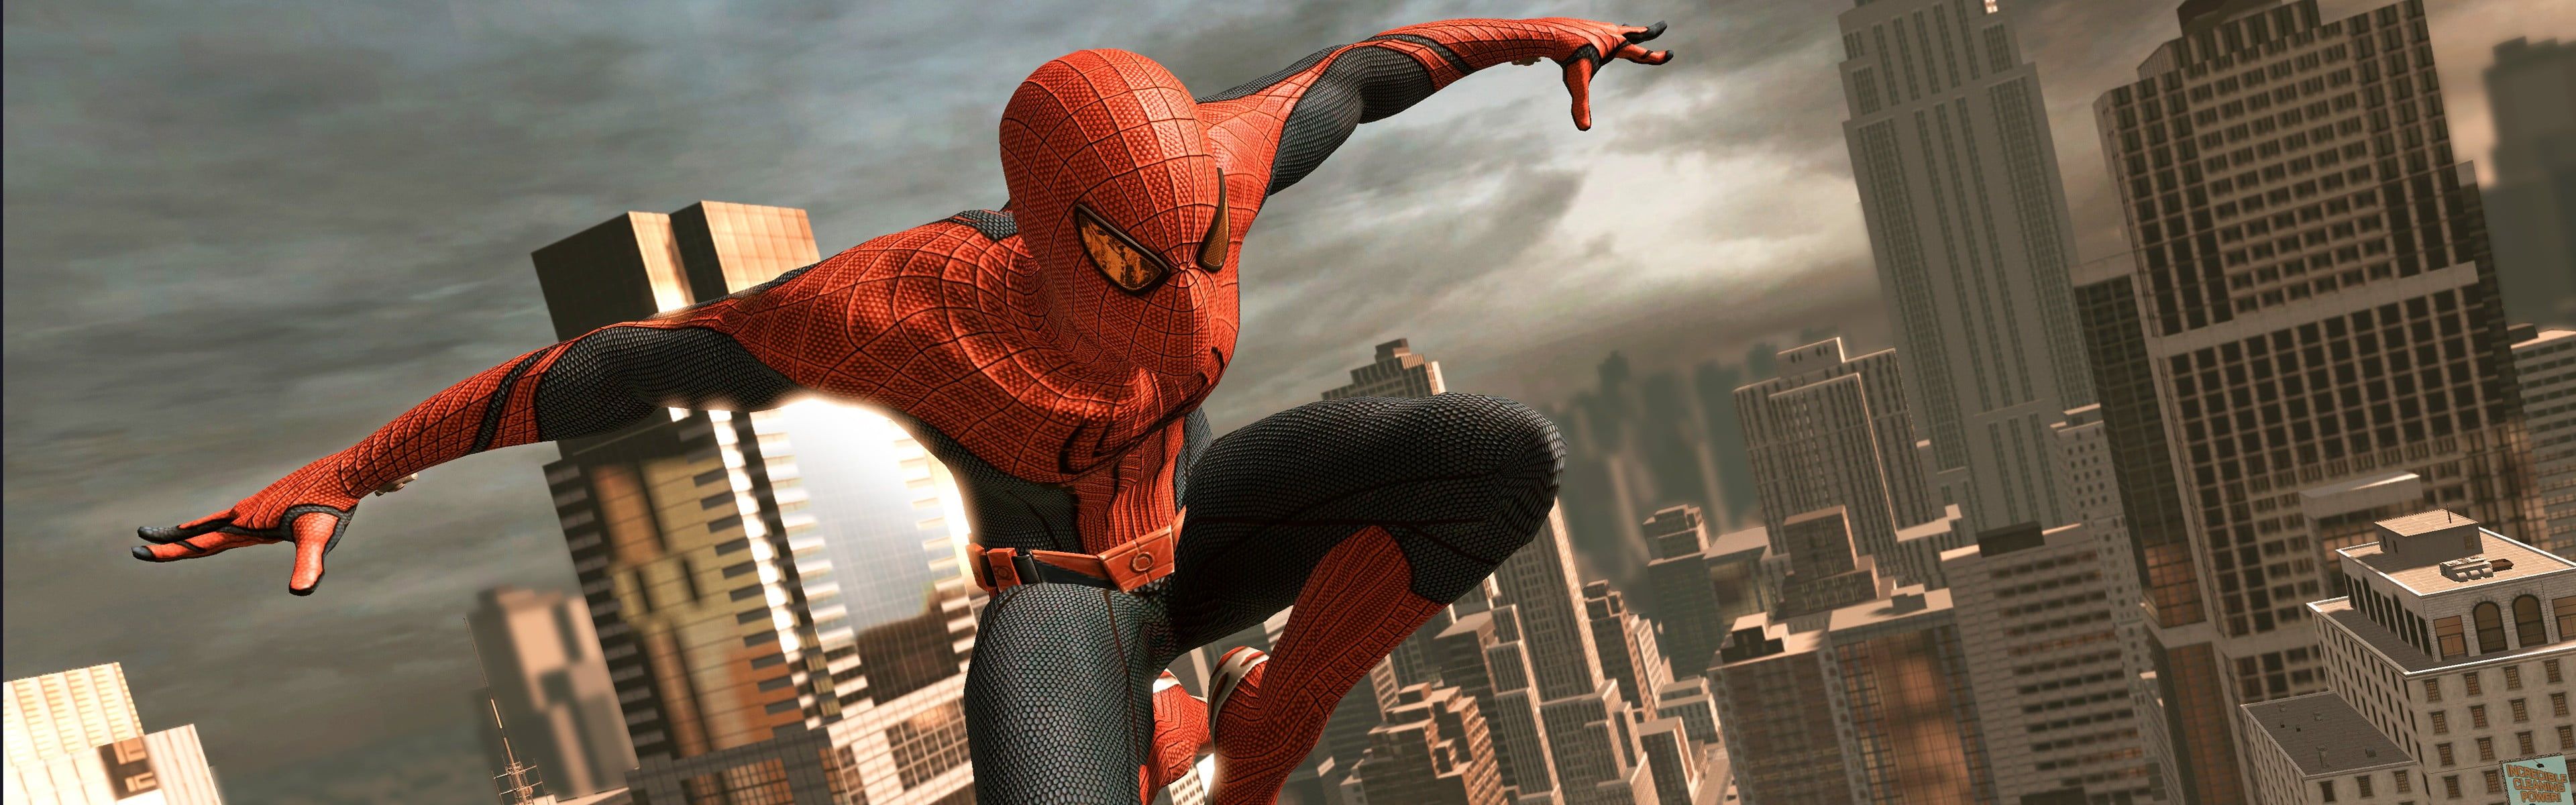 Marvel Spider Man Amazing Video Games City Manhattan